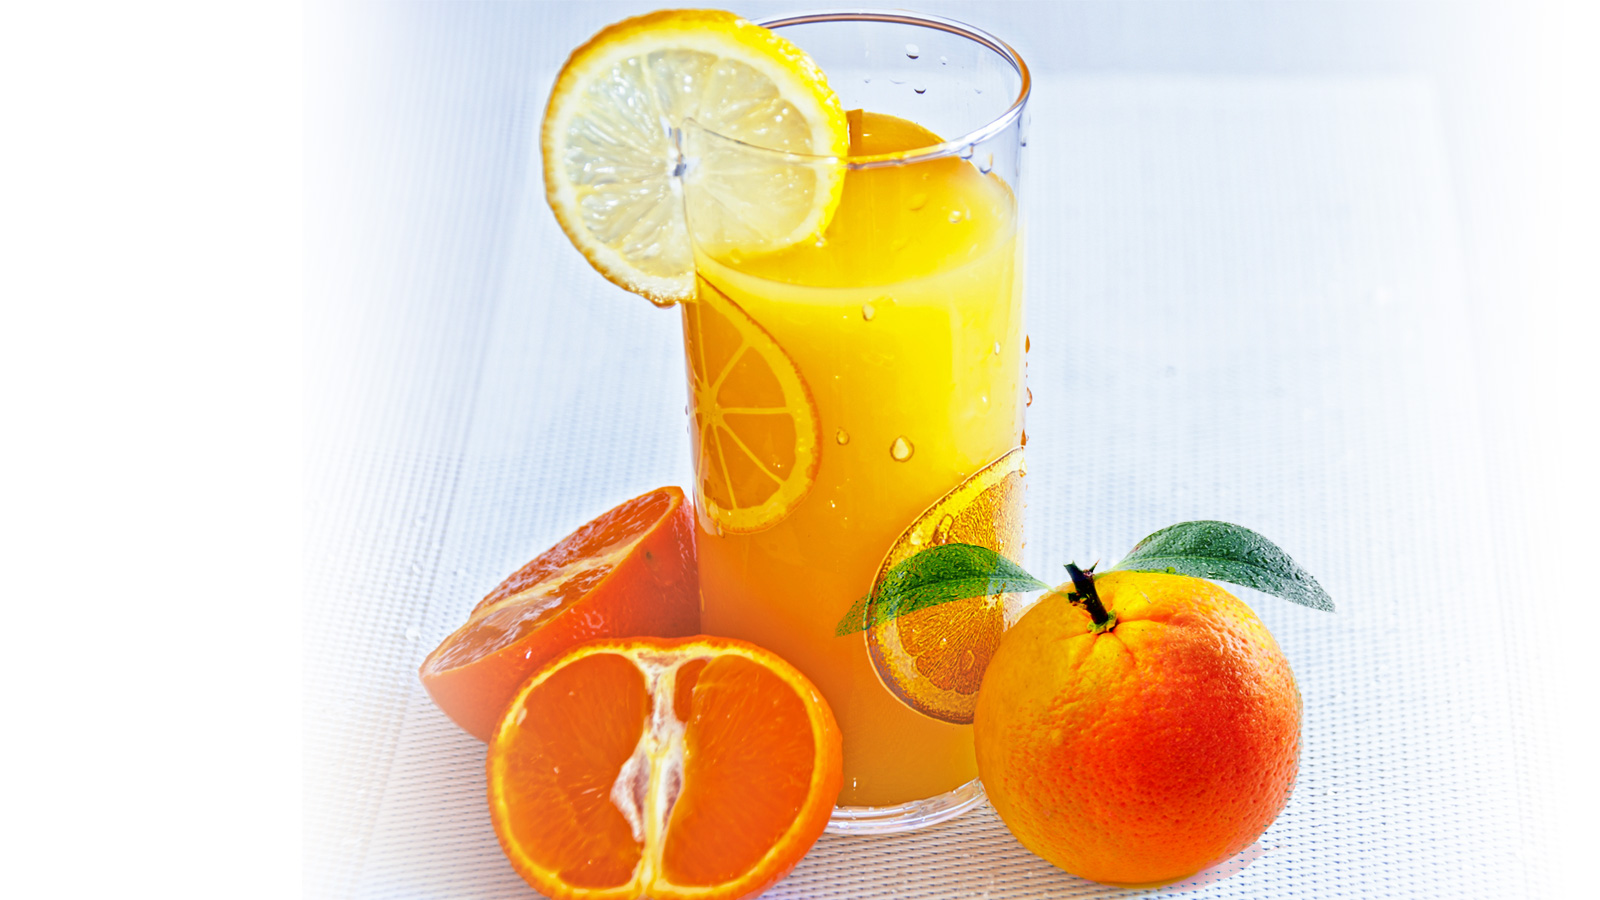  درجات الحرارة المنخفضة تفقد البرتقال مذاقه (بيكسابي)